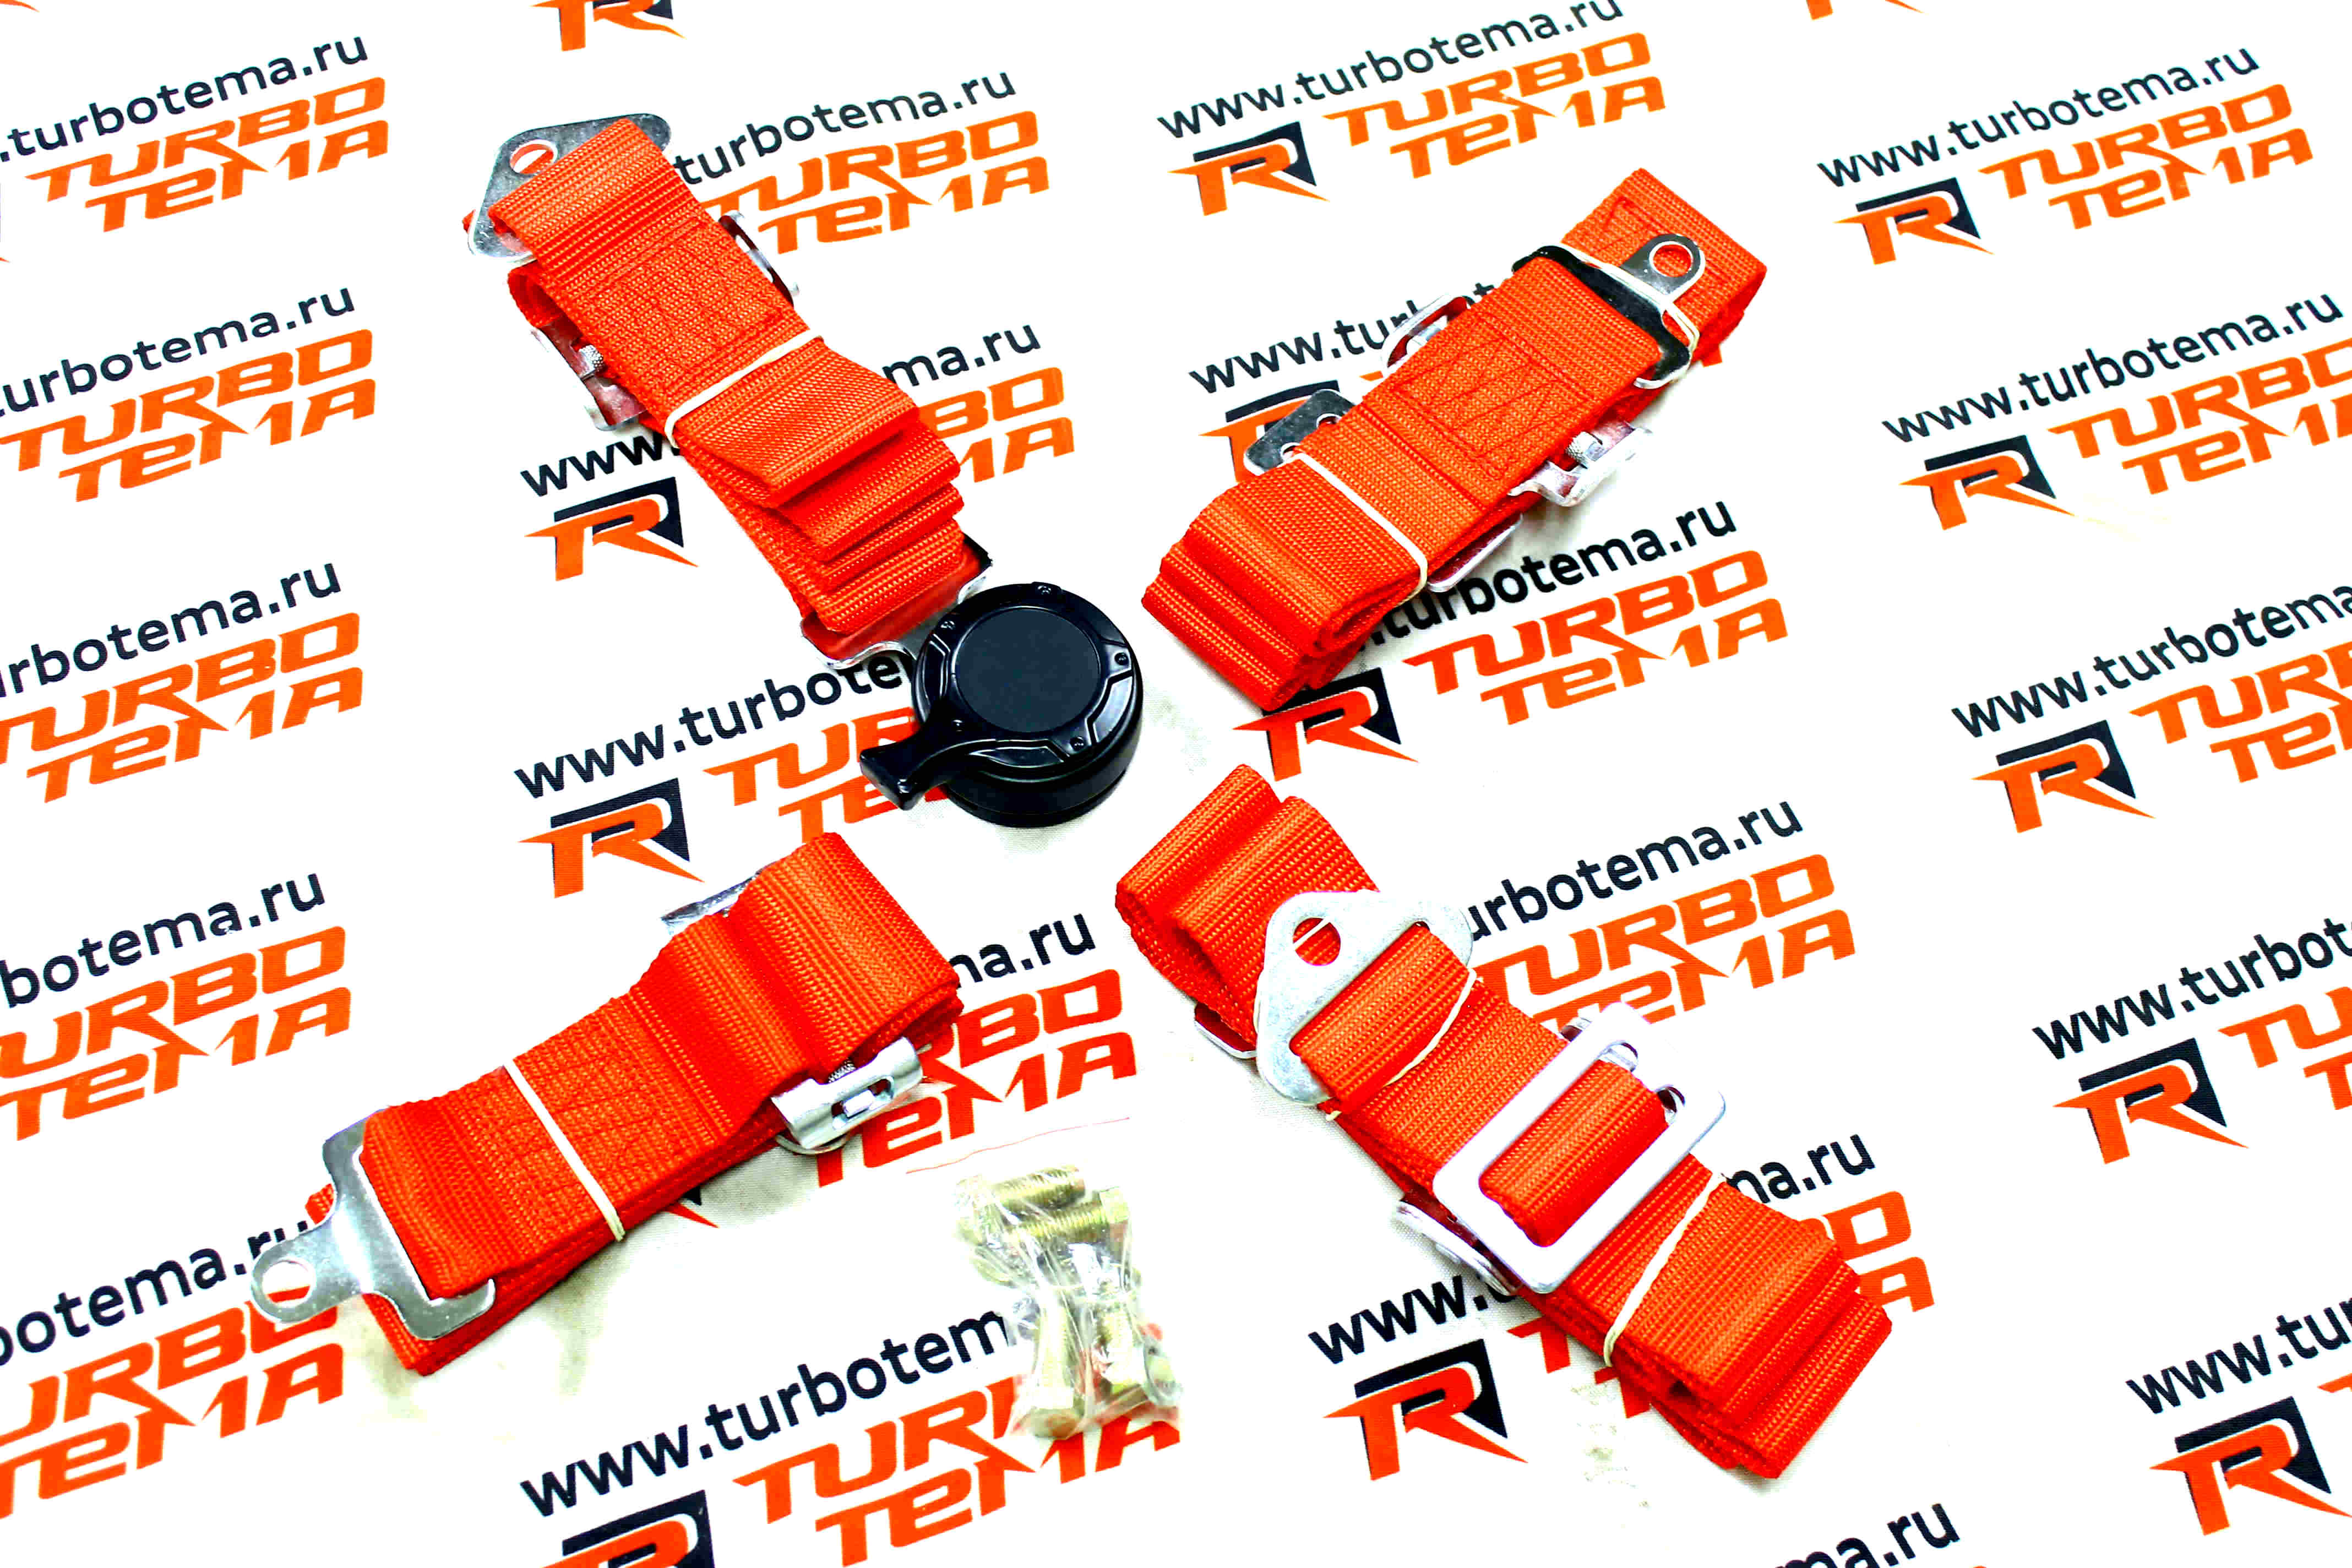 Ремни безопасности "TURBOTEMA" 4-х точечные, 2" ширина, быстросъемные (красные) JBR4001-4. Фото �2